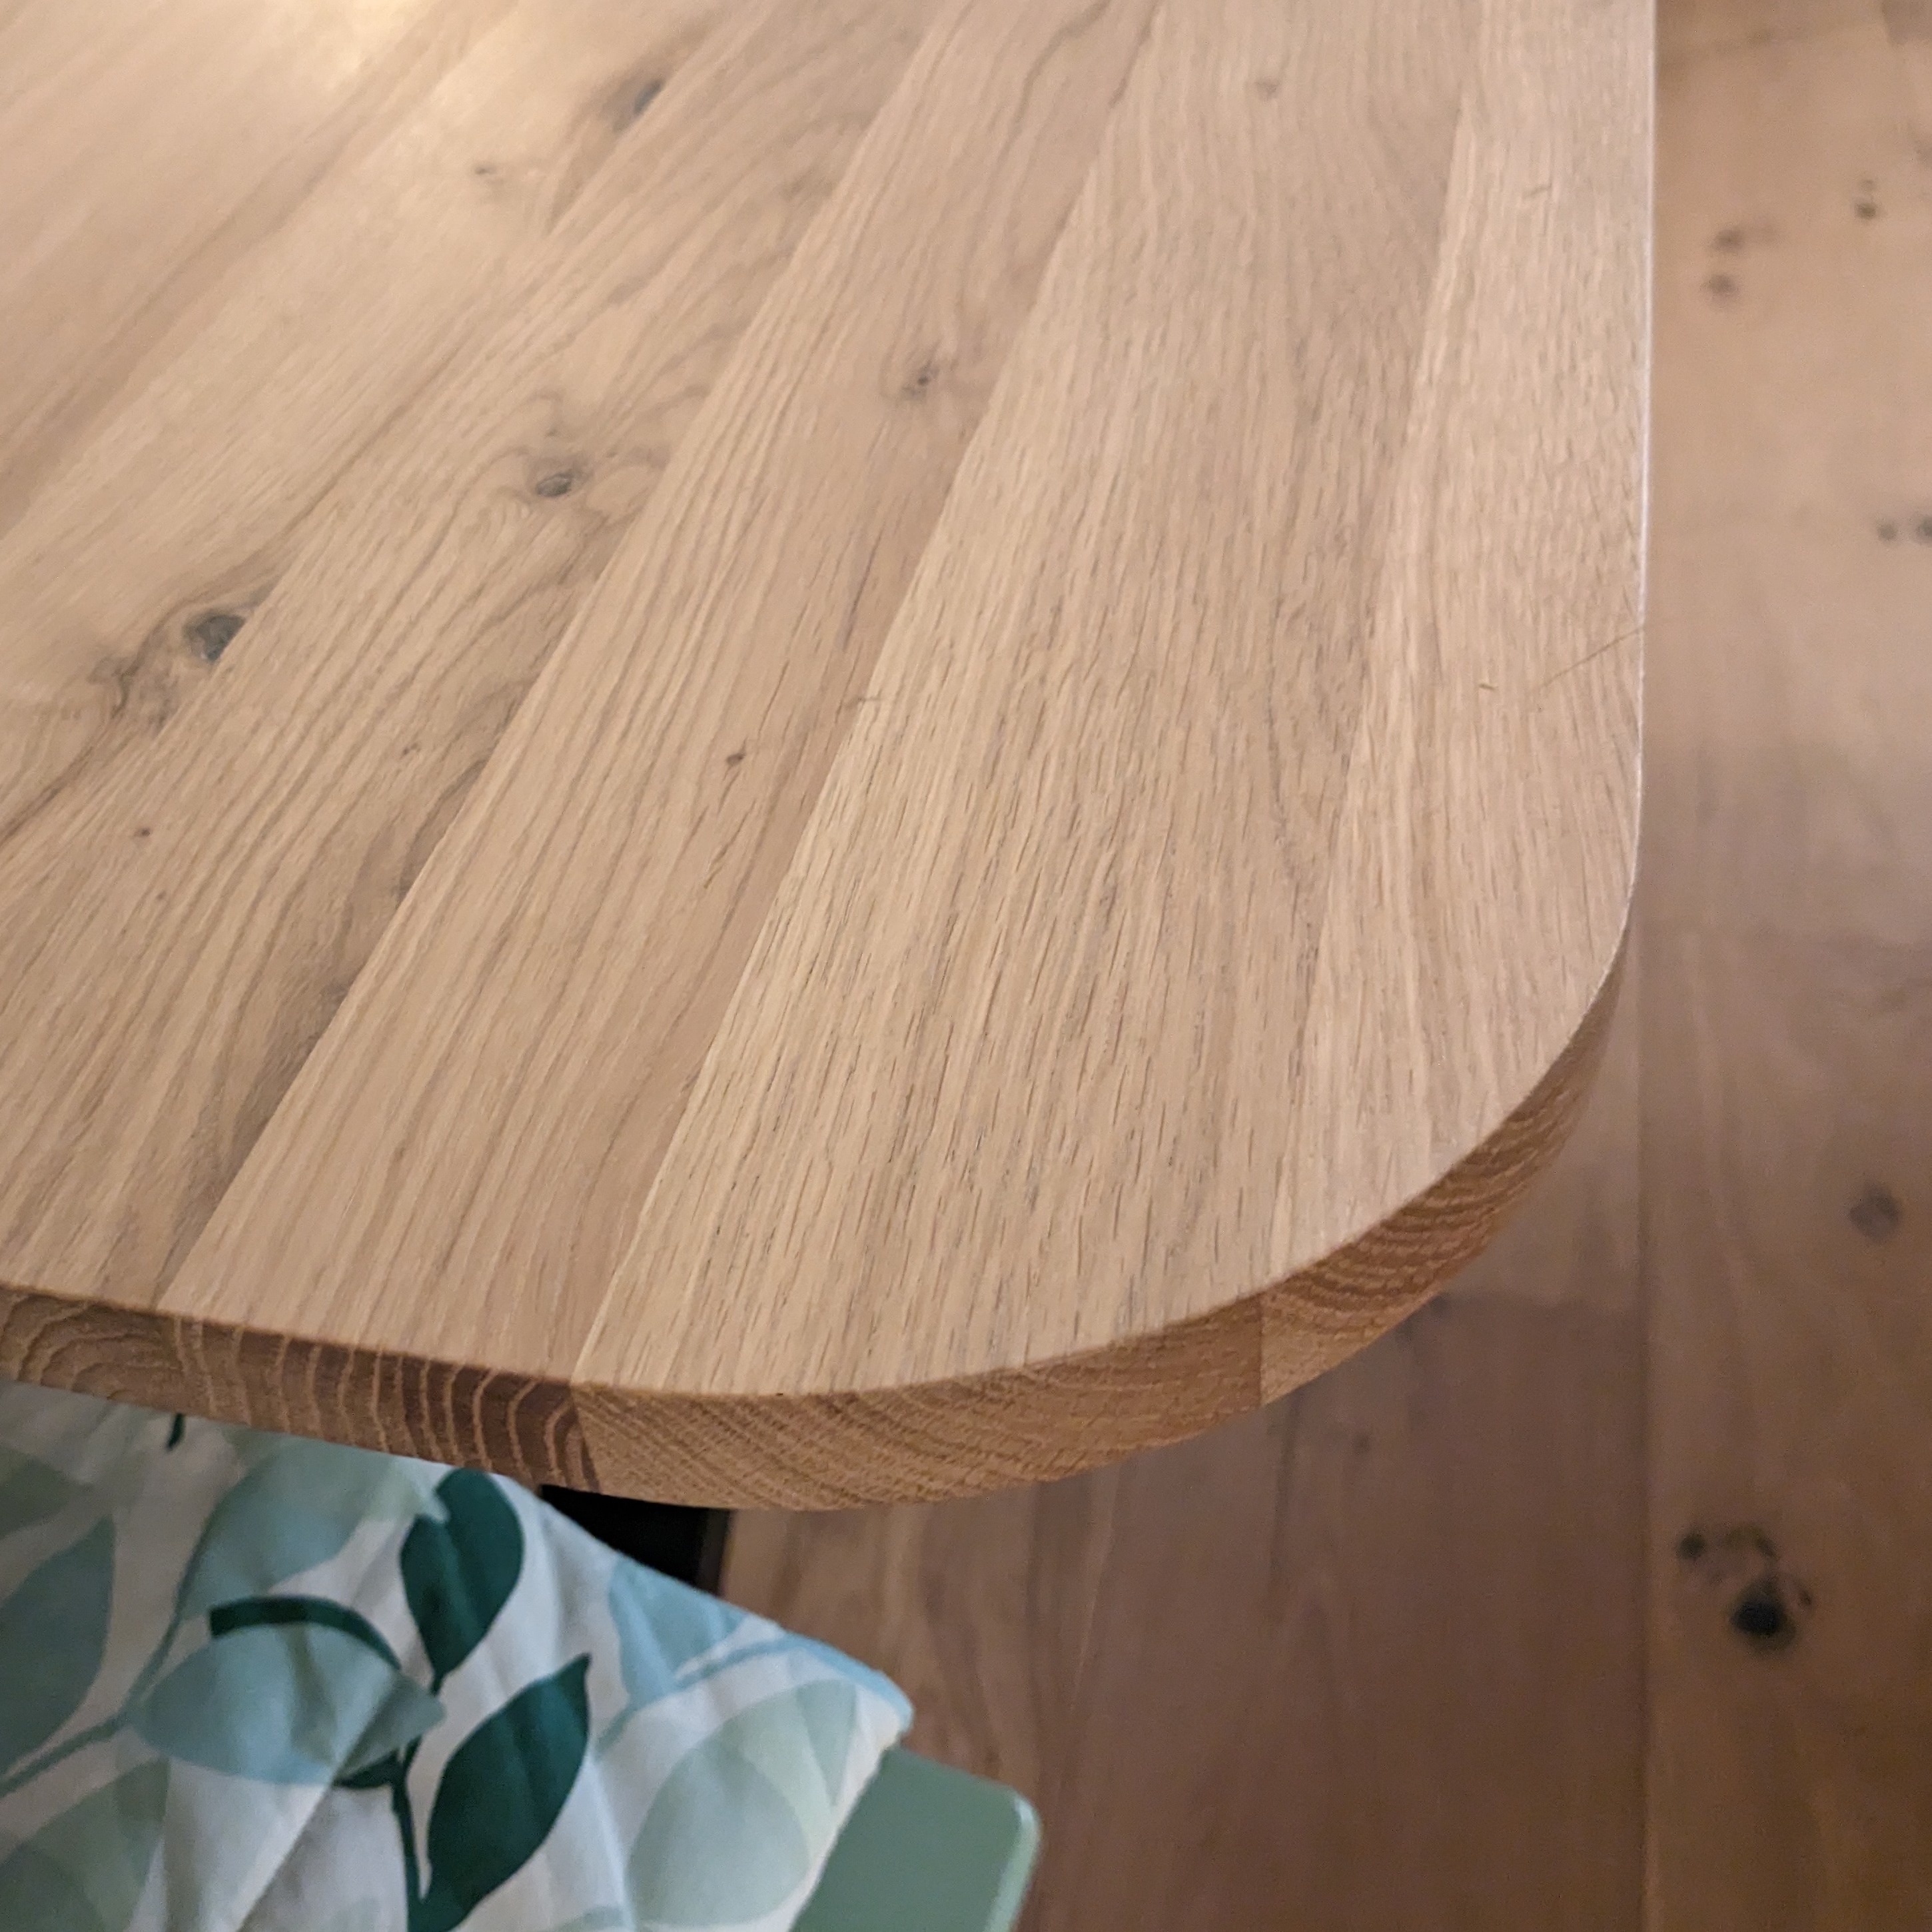  Eiken tafelblad met ronde hoeken - op maat - 2 cm dik (1-laag) - rustiek Europees eikenhout - verlijmd kd 8-12% - 50-120x50-300 cm  - Afgeronde hoeken radius 5, 8, of 10 cm